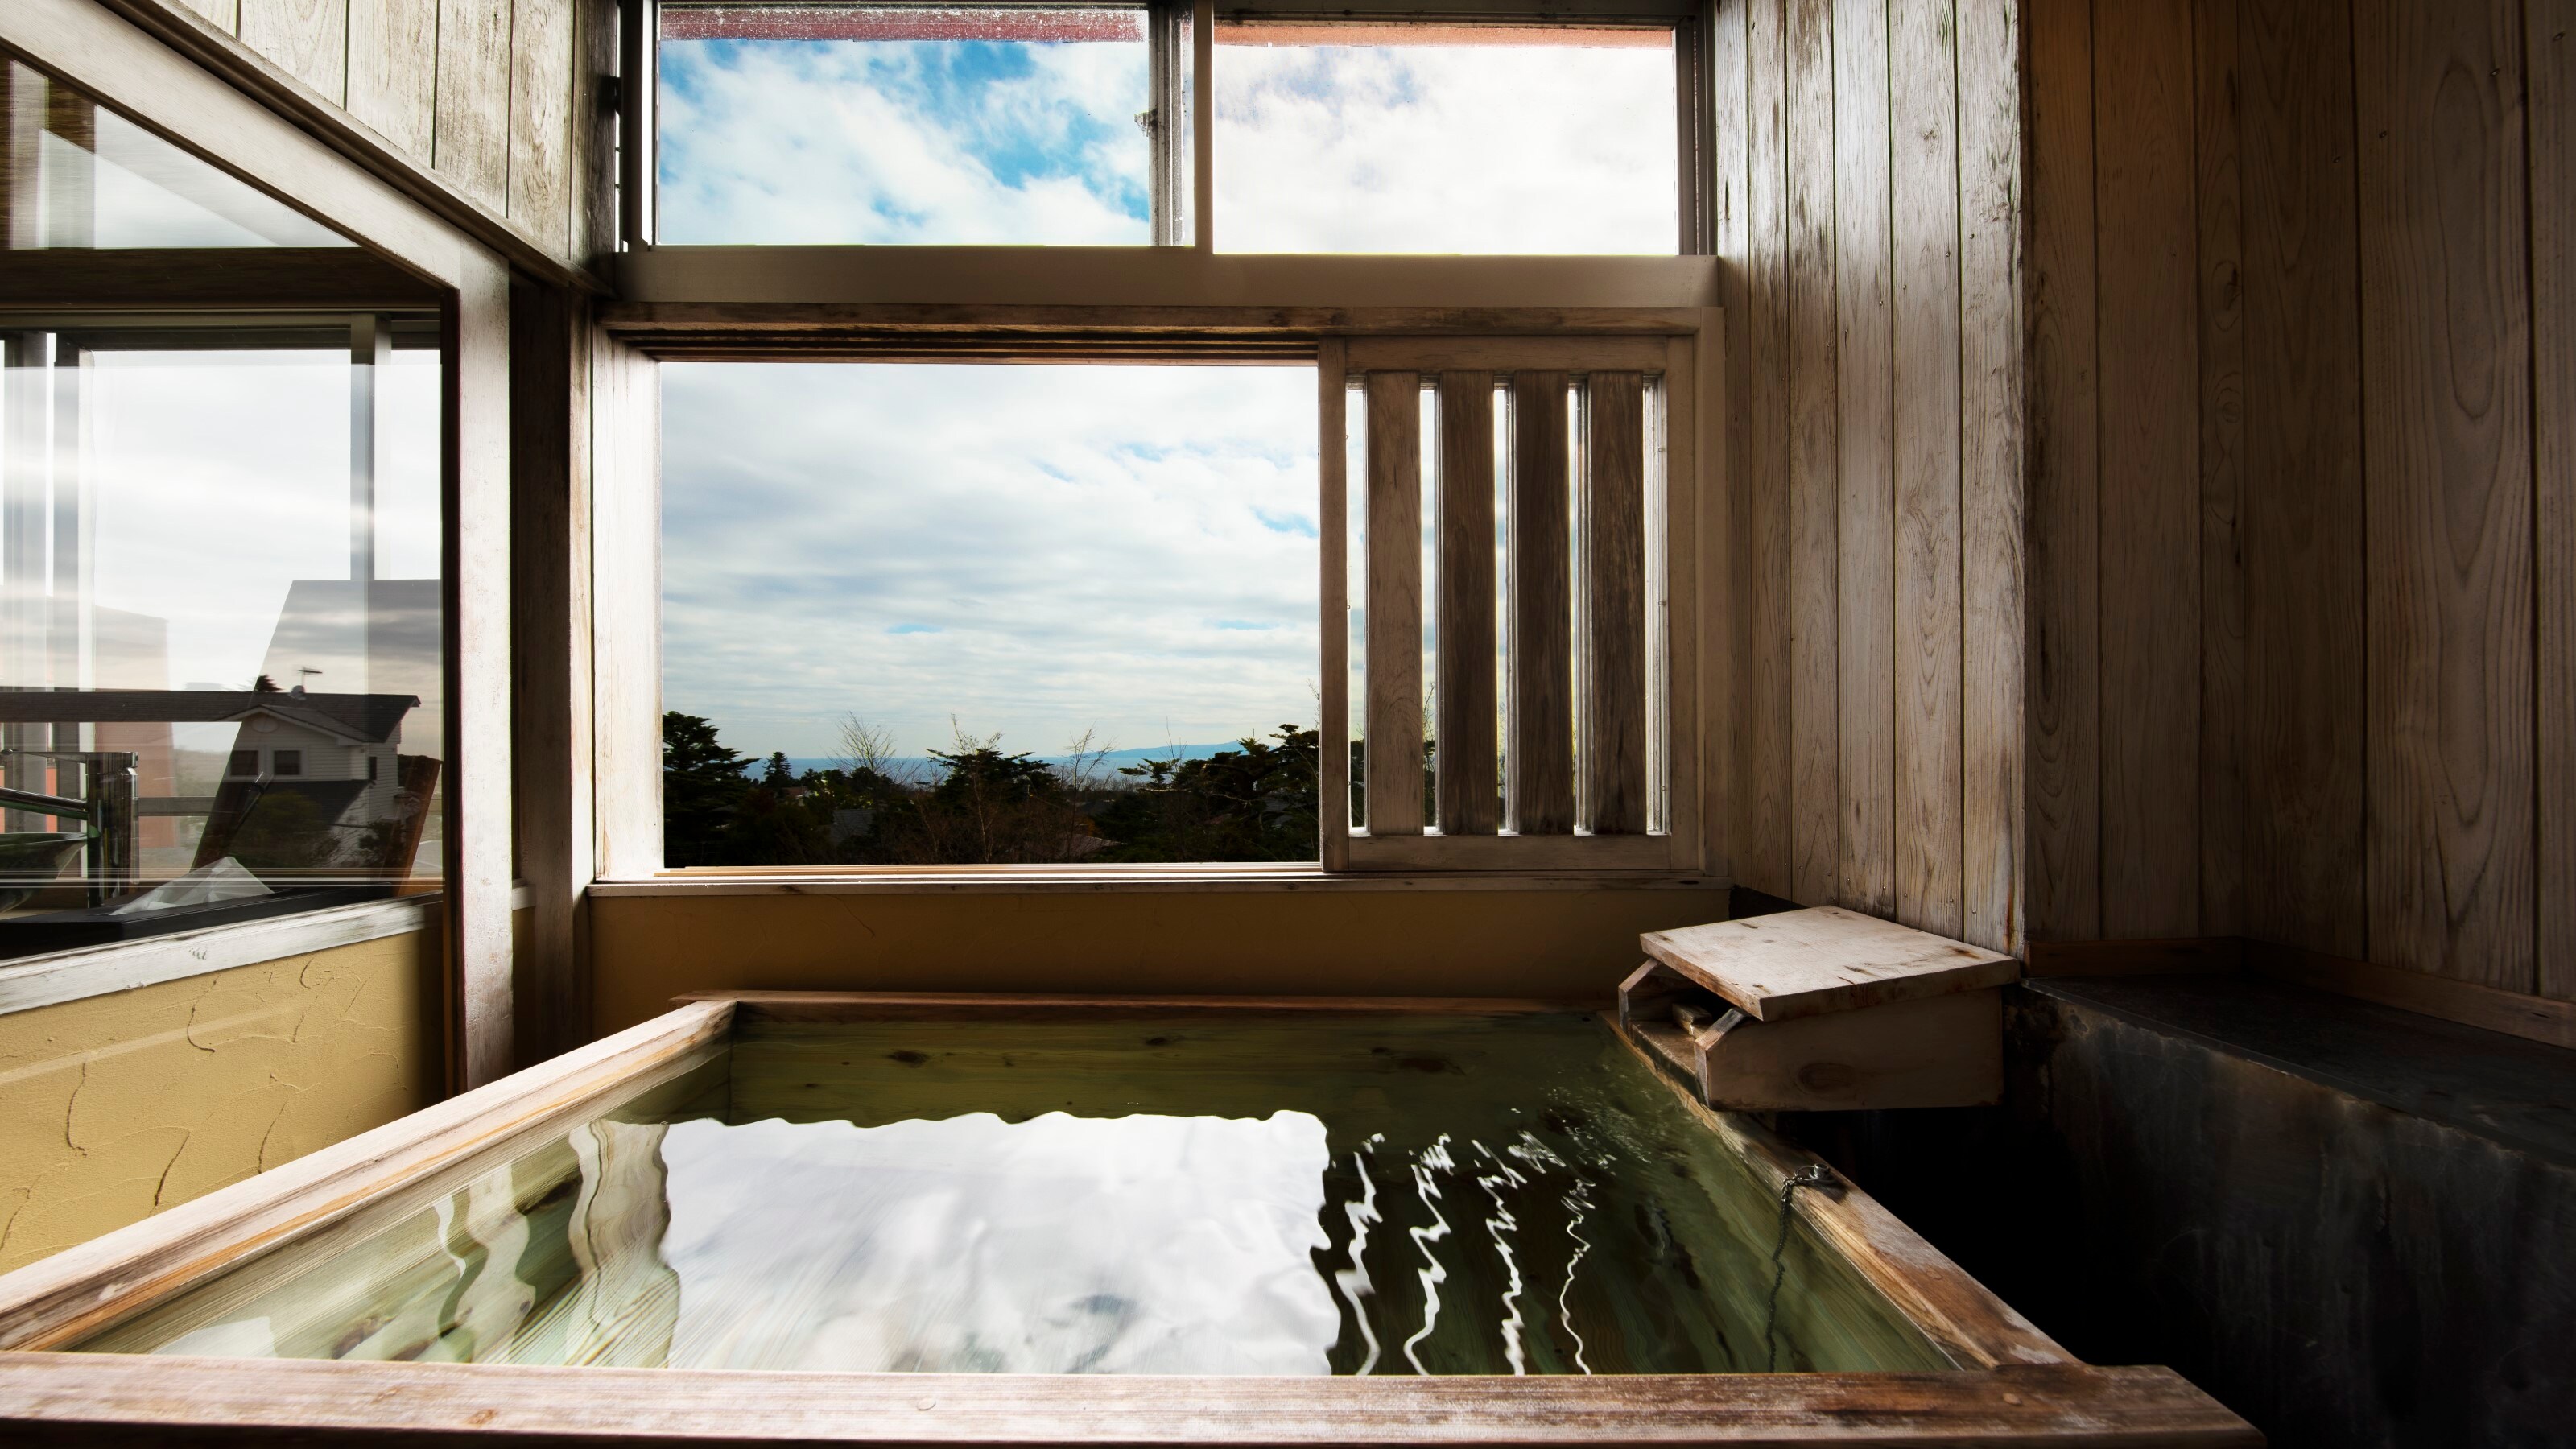 8張榻榻米日式客房、帶露天浴池的吸煙室、卡諾